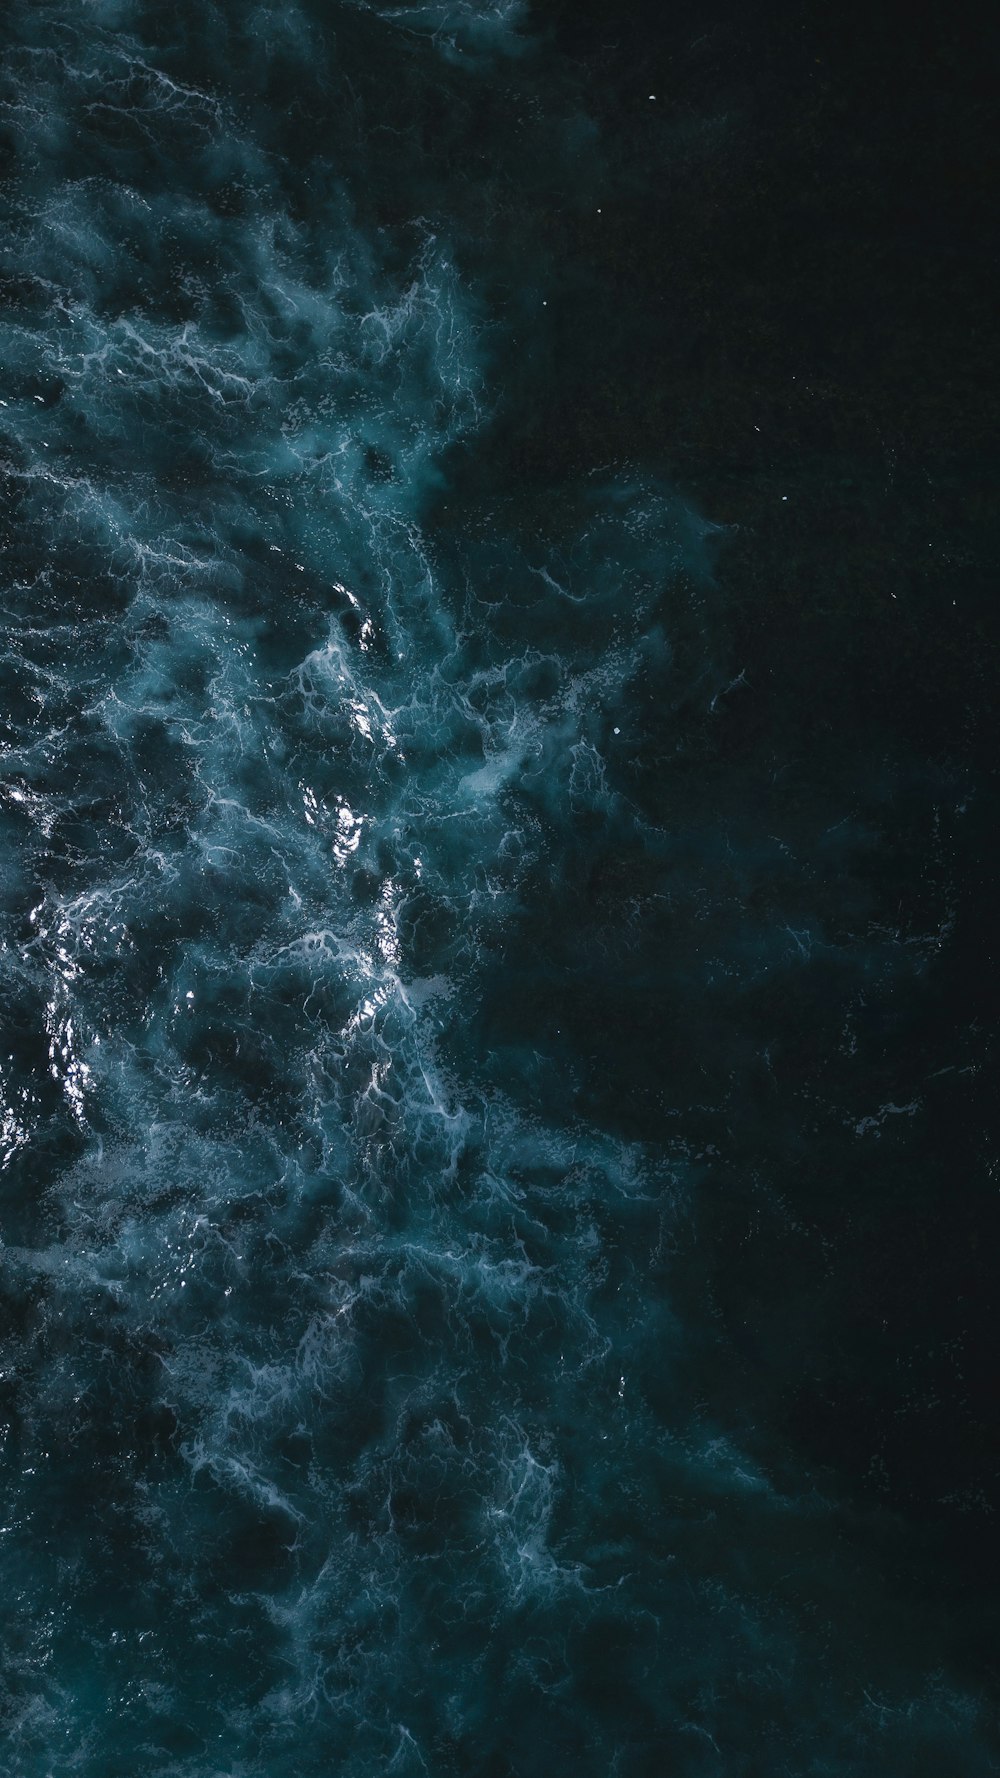 Una vista aérea de un cuerpo de agua